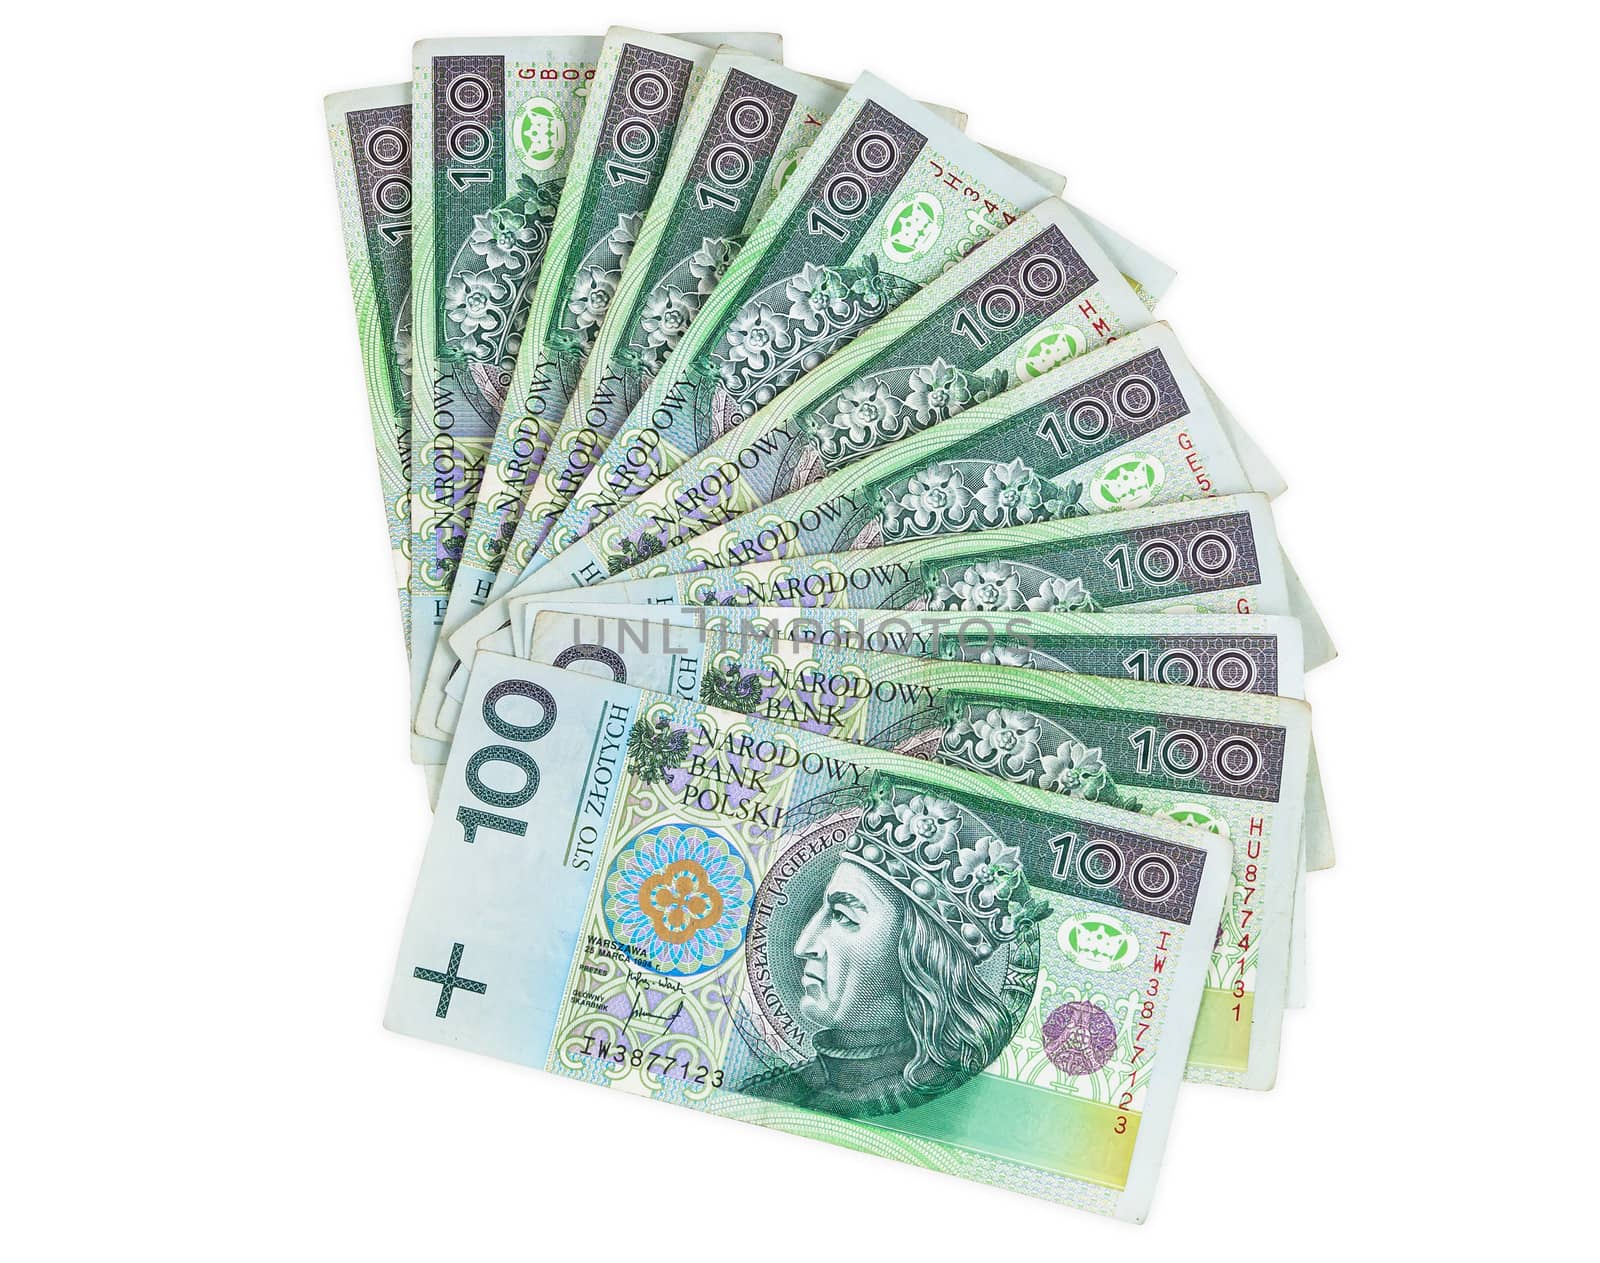 Polish banknotes of 100 PLN by mkos83